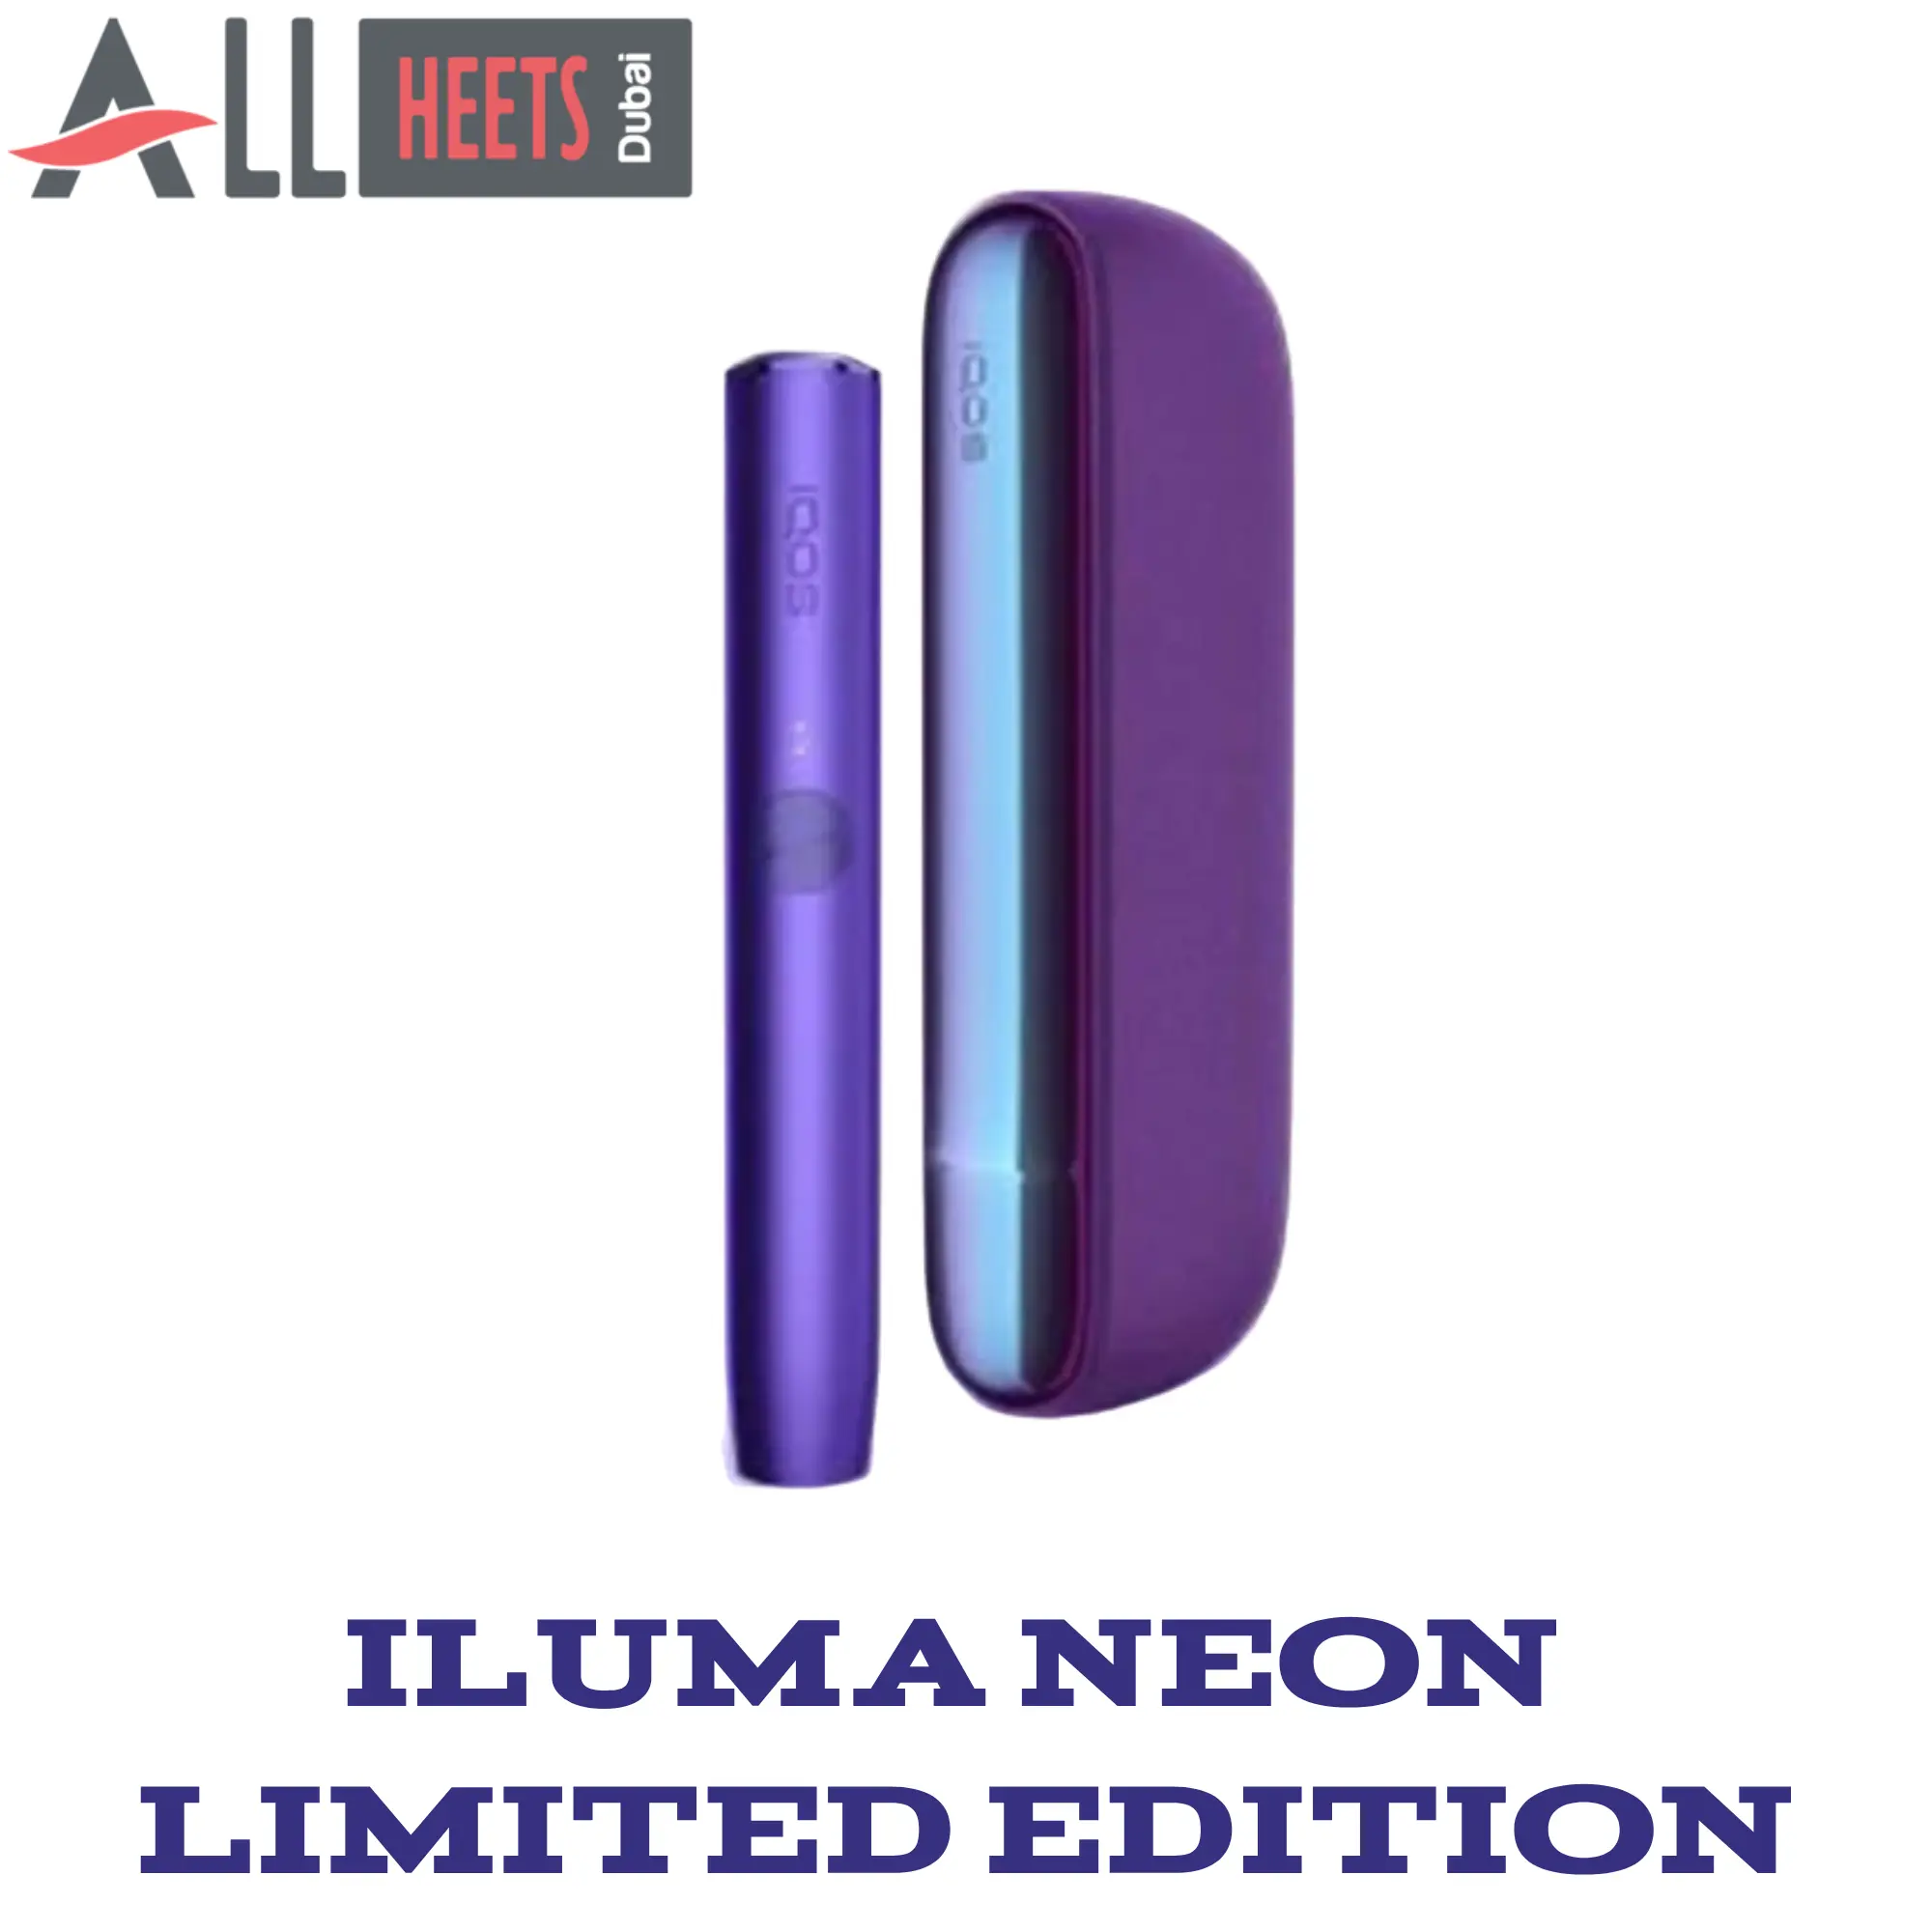 IQOS Iluma Neon Limited Edition Dubai UAE - In Dubai